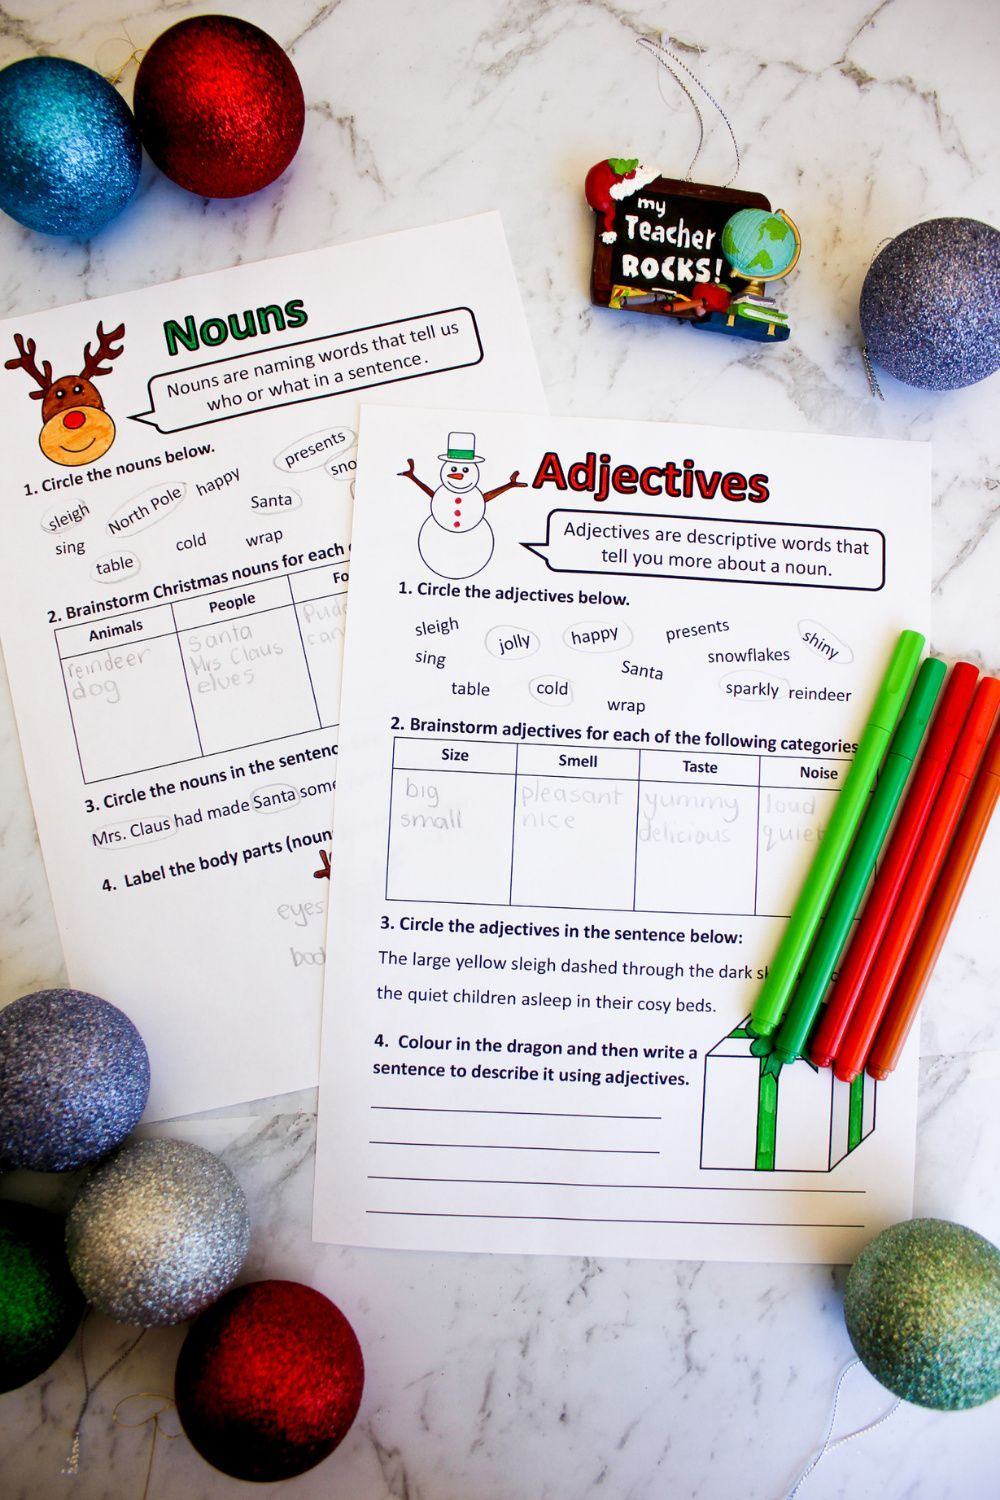 Christmas Parts Of Speech (Grammar) Worksheets- Nouns, Verbs